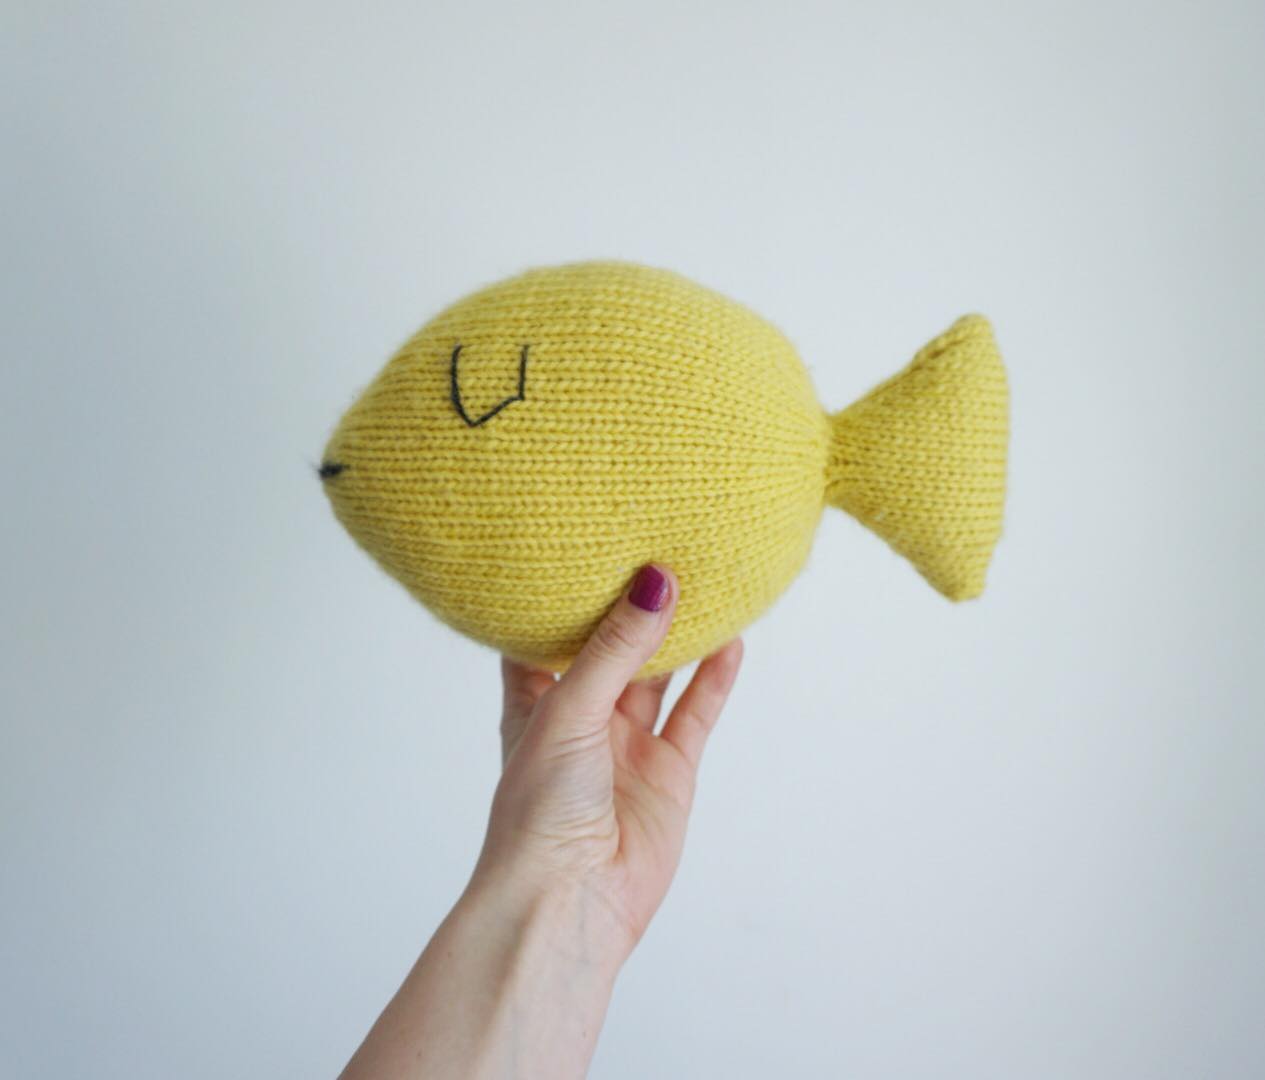  - Fish toy pillow knitting kit - Fish Pillow - by HipKnitShop - 17/04/2018